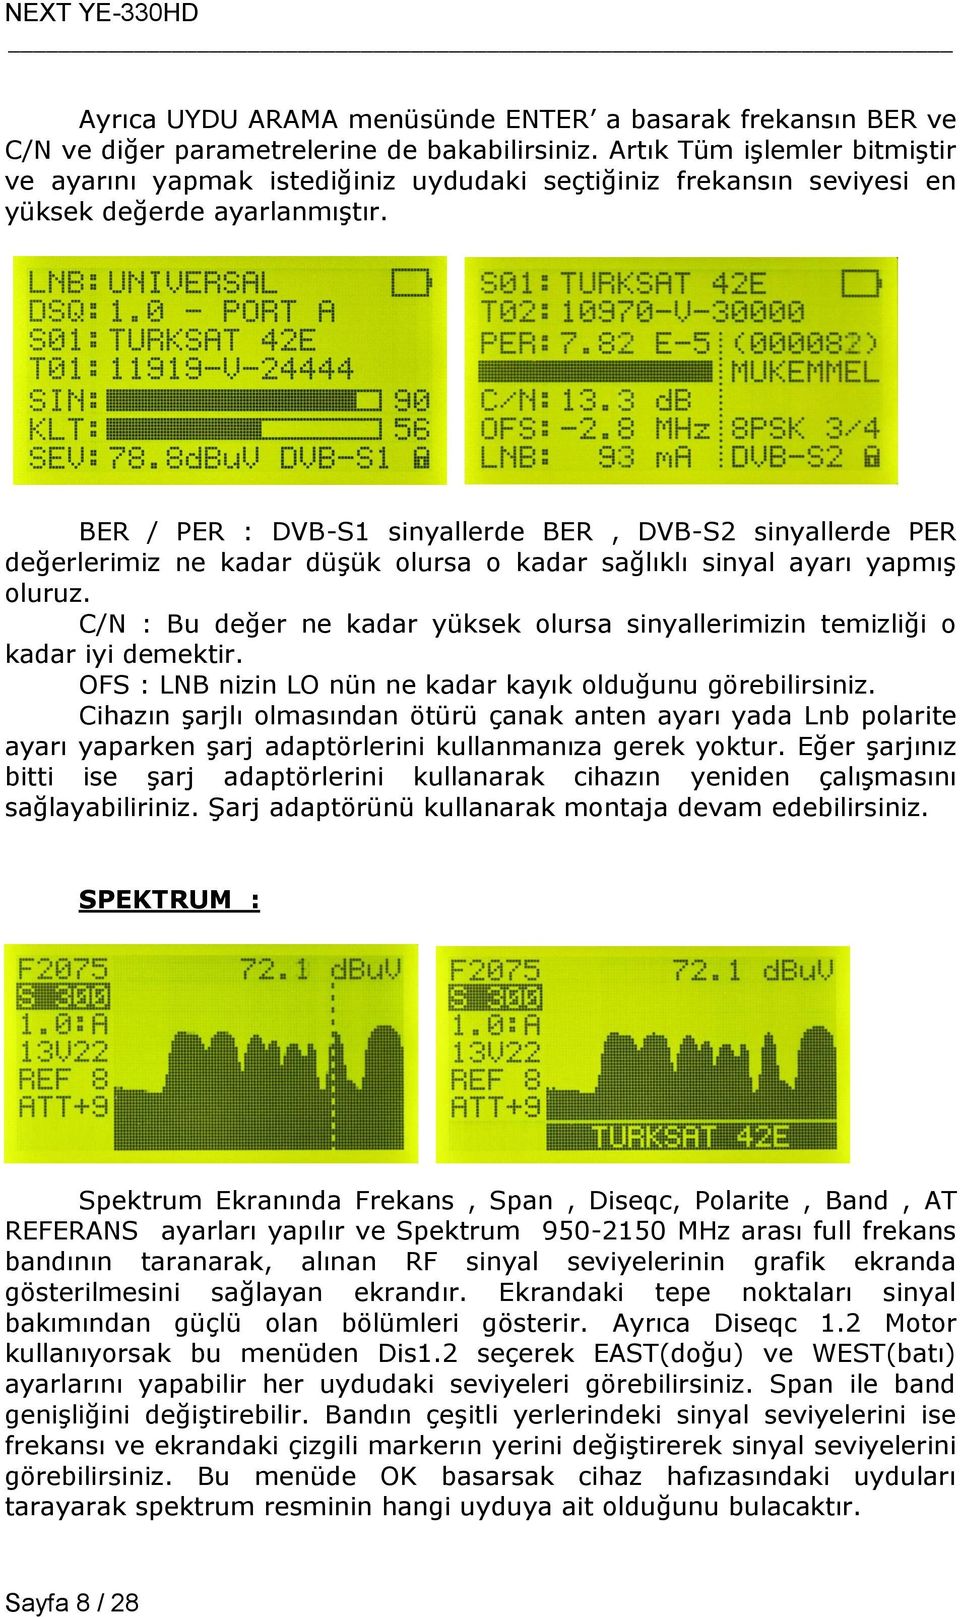 BER / PER : DVB-S1 sinyallerde BER, DVB-S2 sinyallerde PER değerlerimiz ne kadar düşük olursa o kadar sağlıklı sinyal ayarı yapmış oluruz.